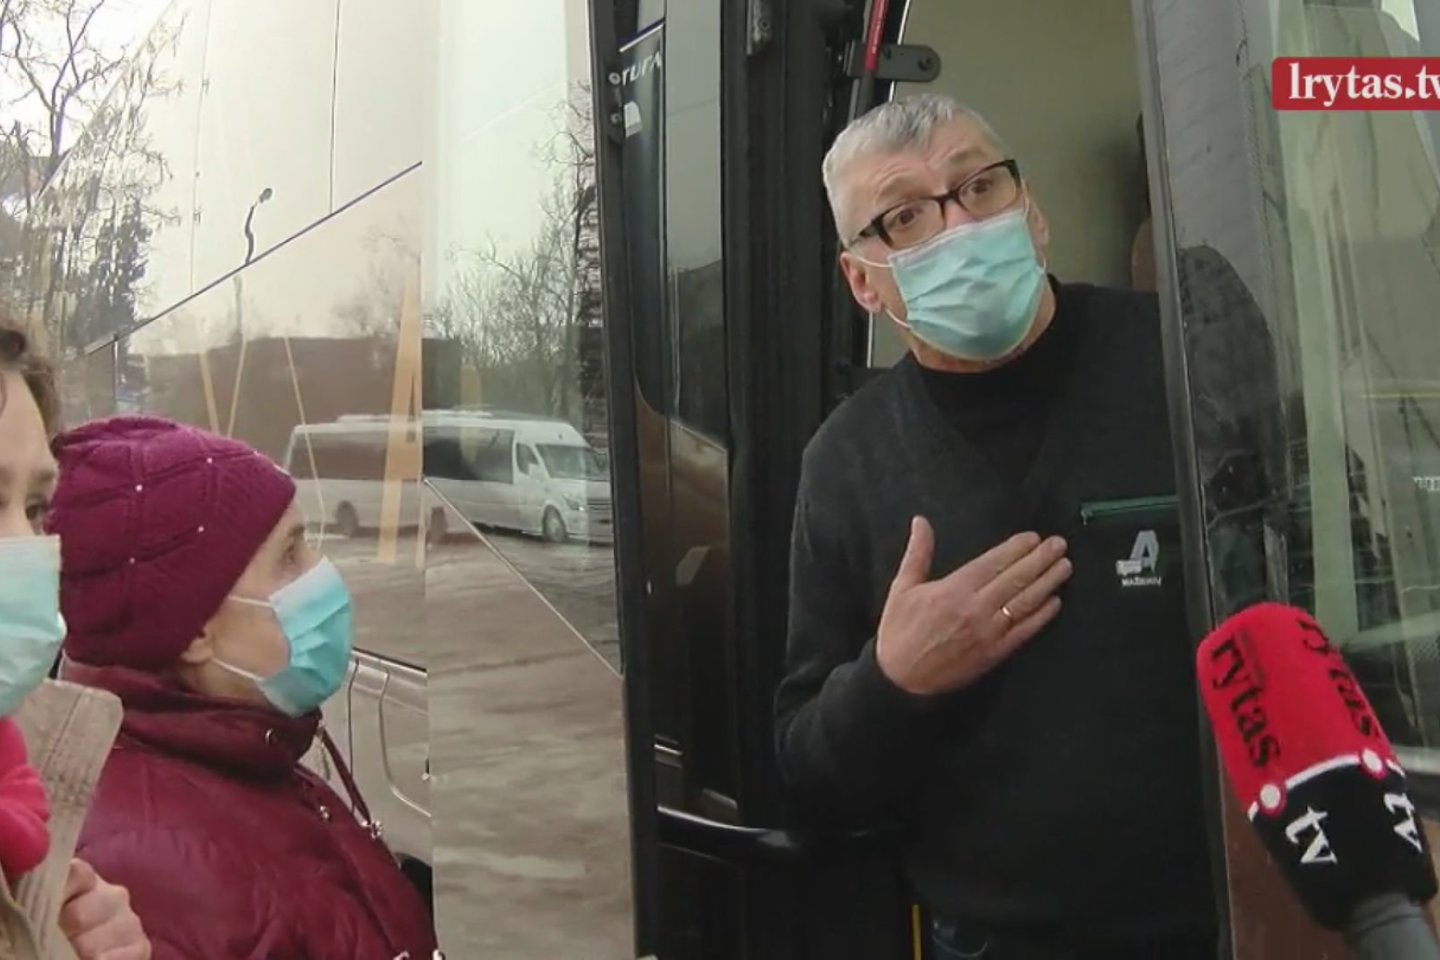 Šalyje pradėjus onkologinius ligonius skiepyti nuo koronaviruso, dramų autobusų stotyse ne viena.<br>„Lietuvos rytas“ TV stop kadras